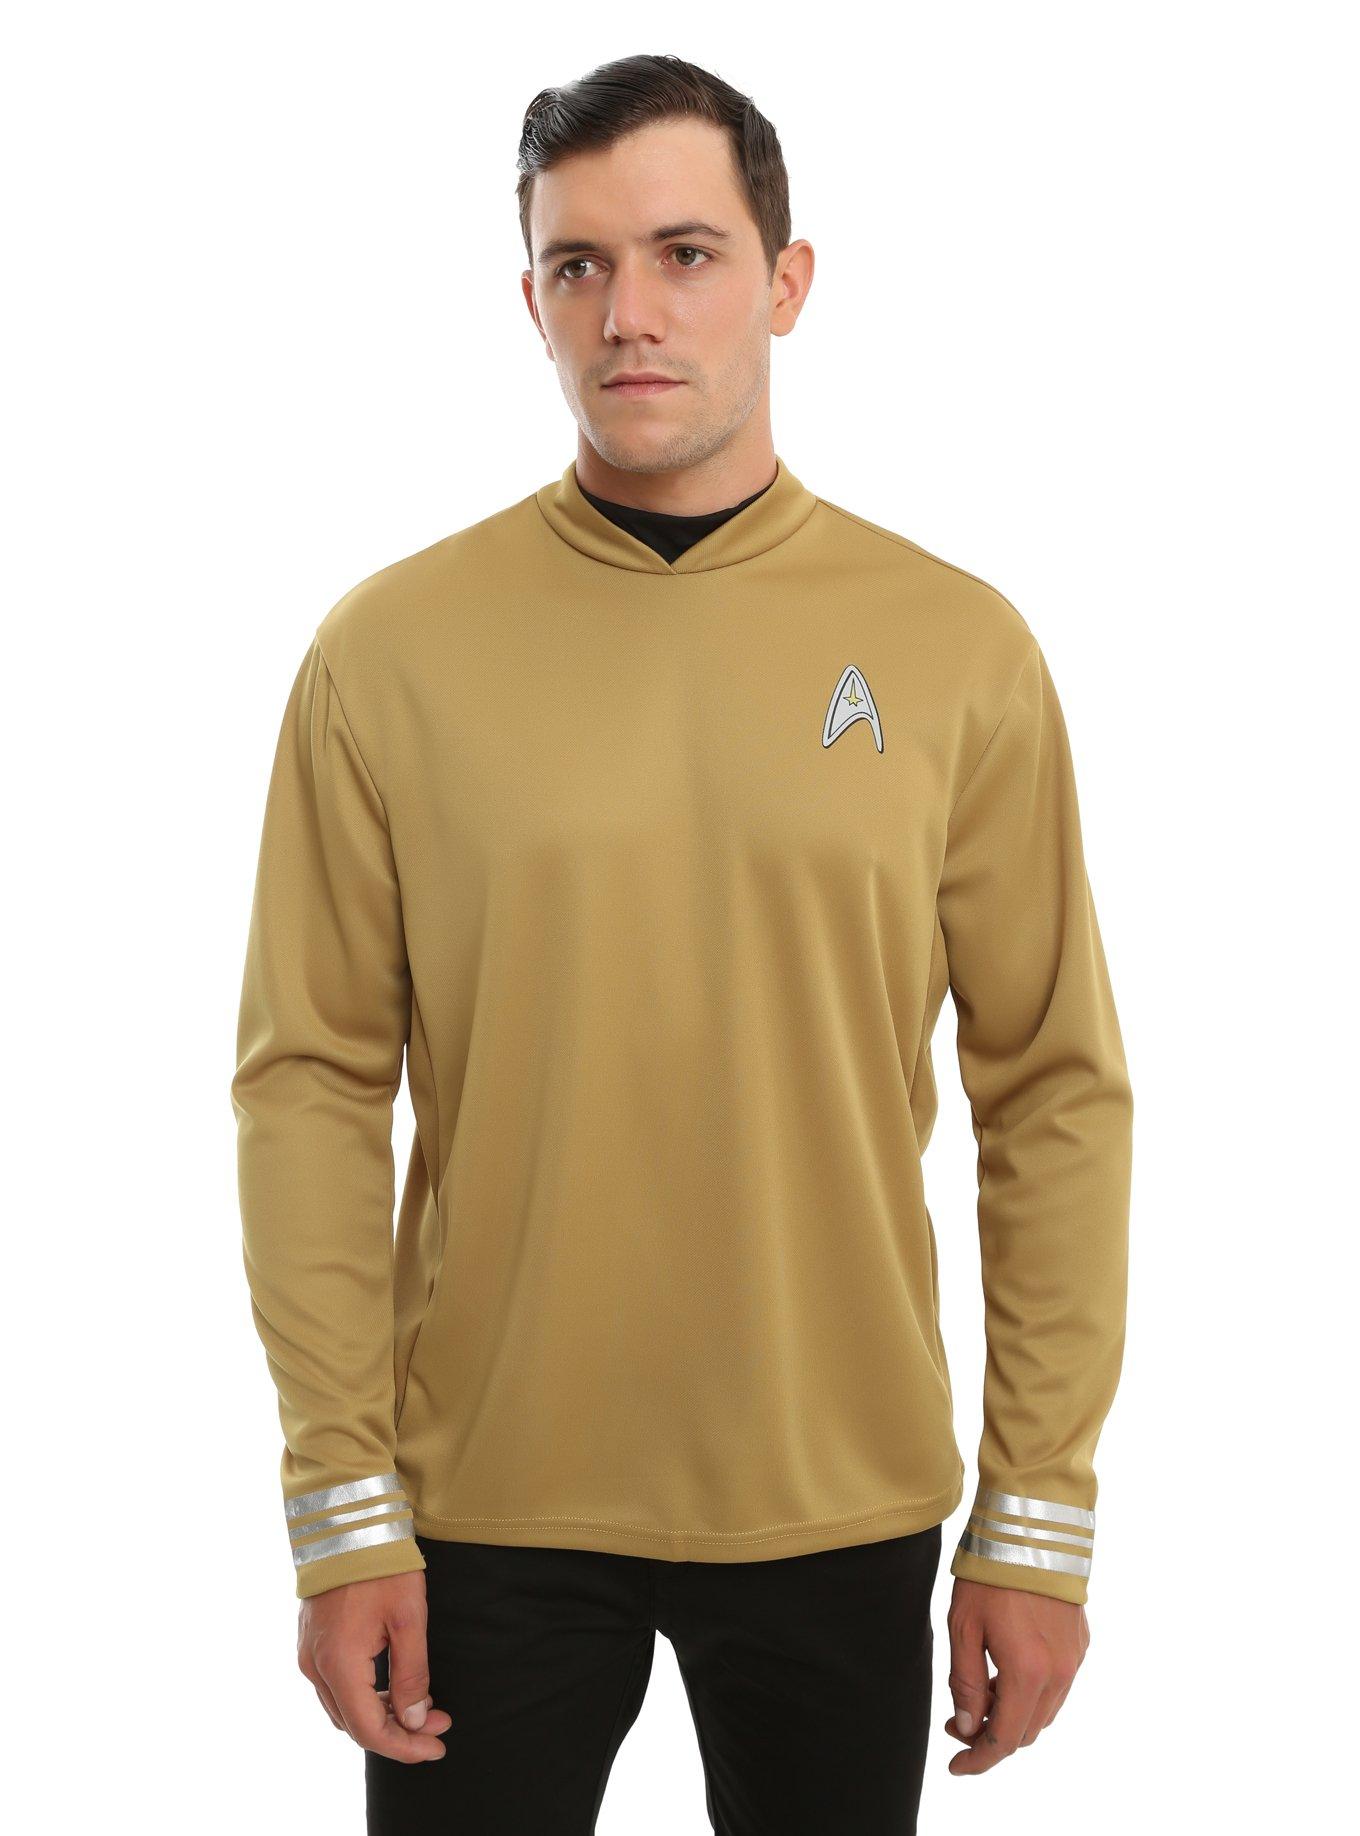 Star Trek Beyond Captain Kirk Costume, MULTI, hi-res